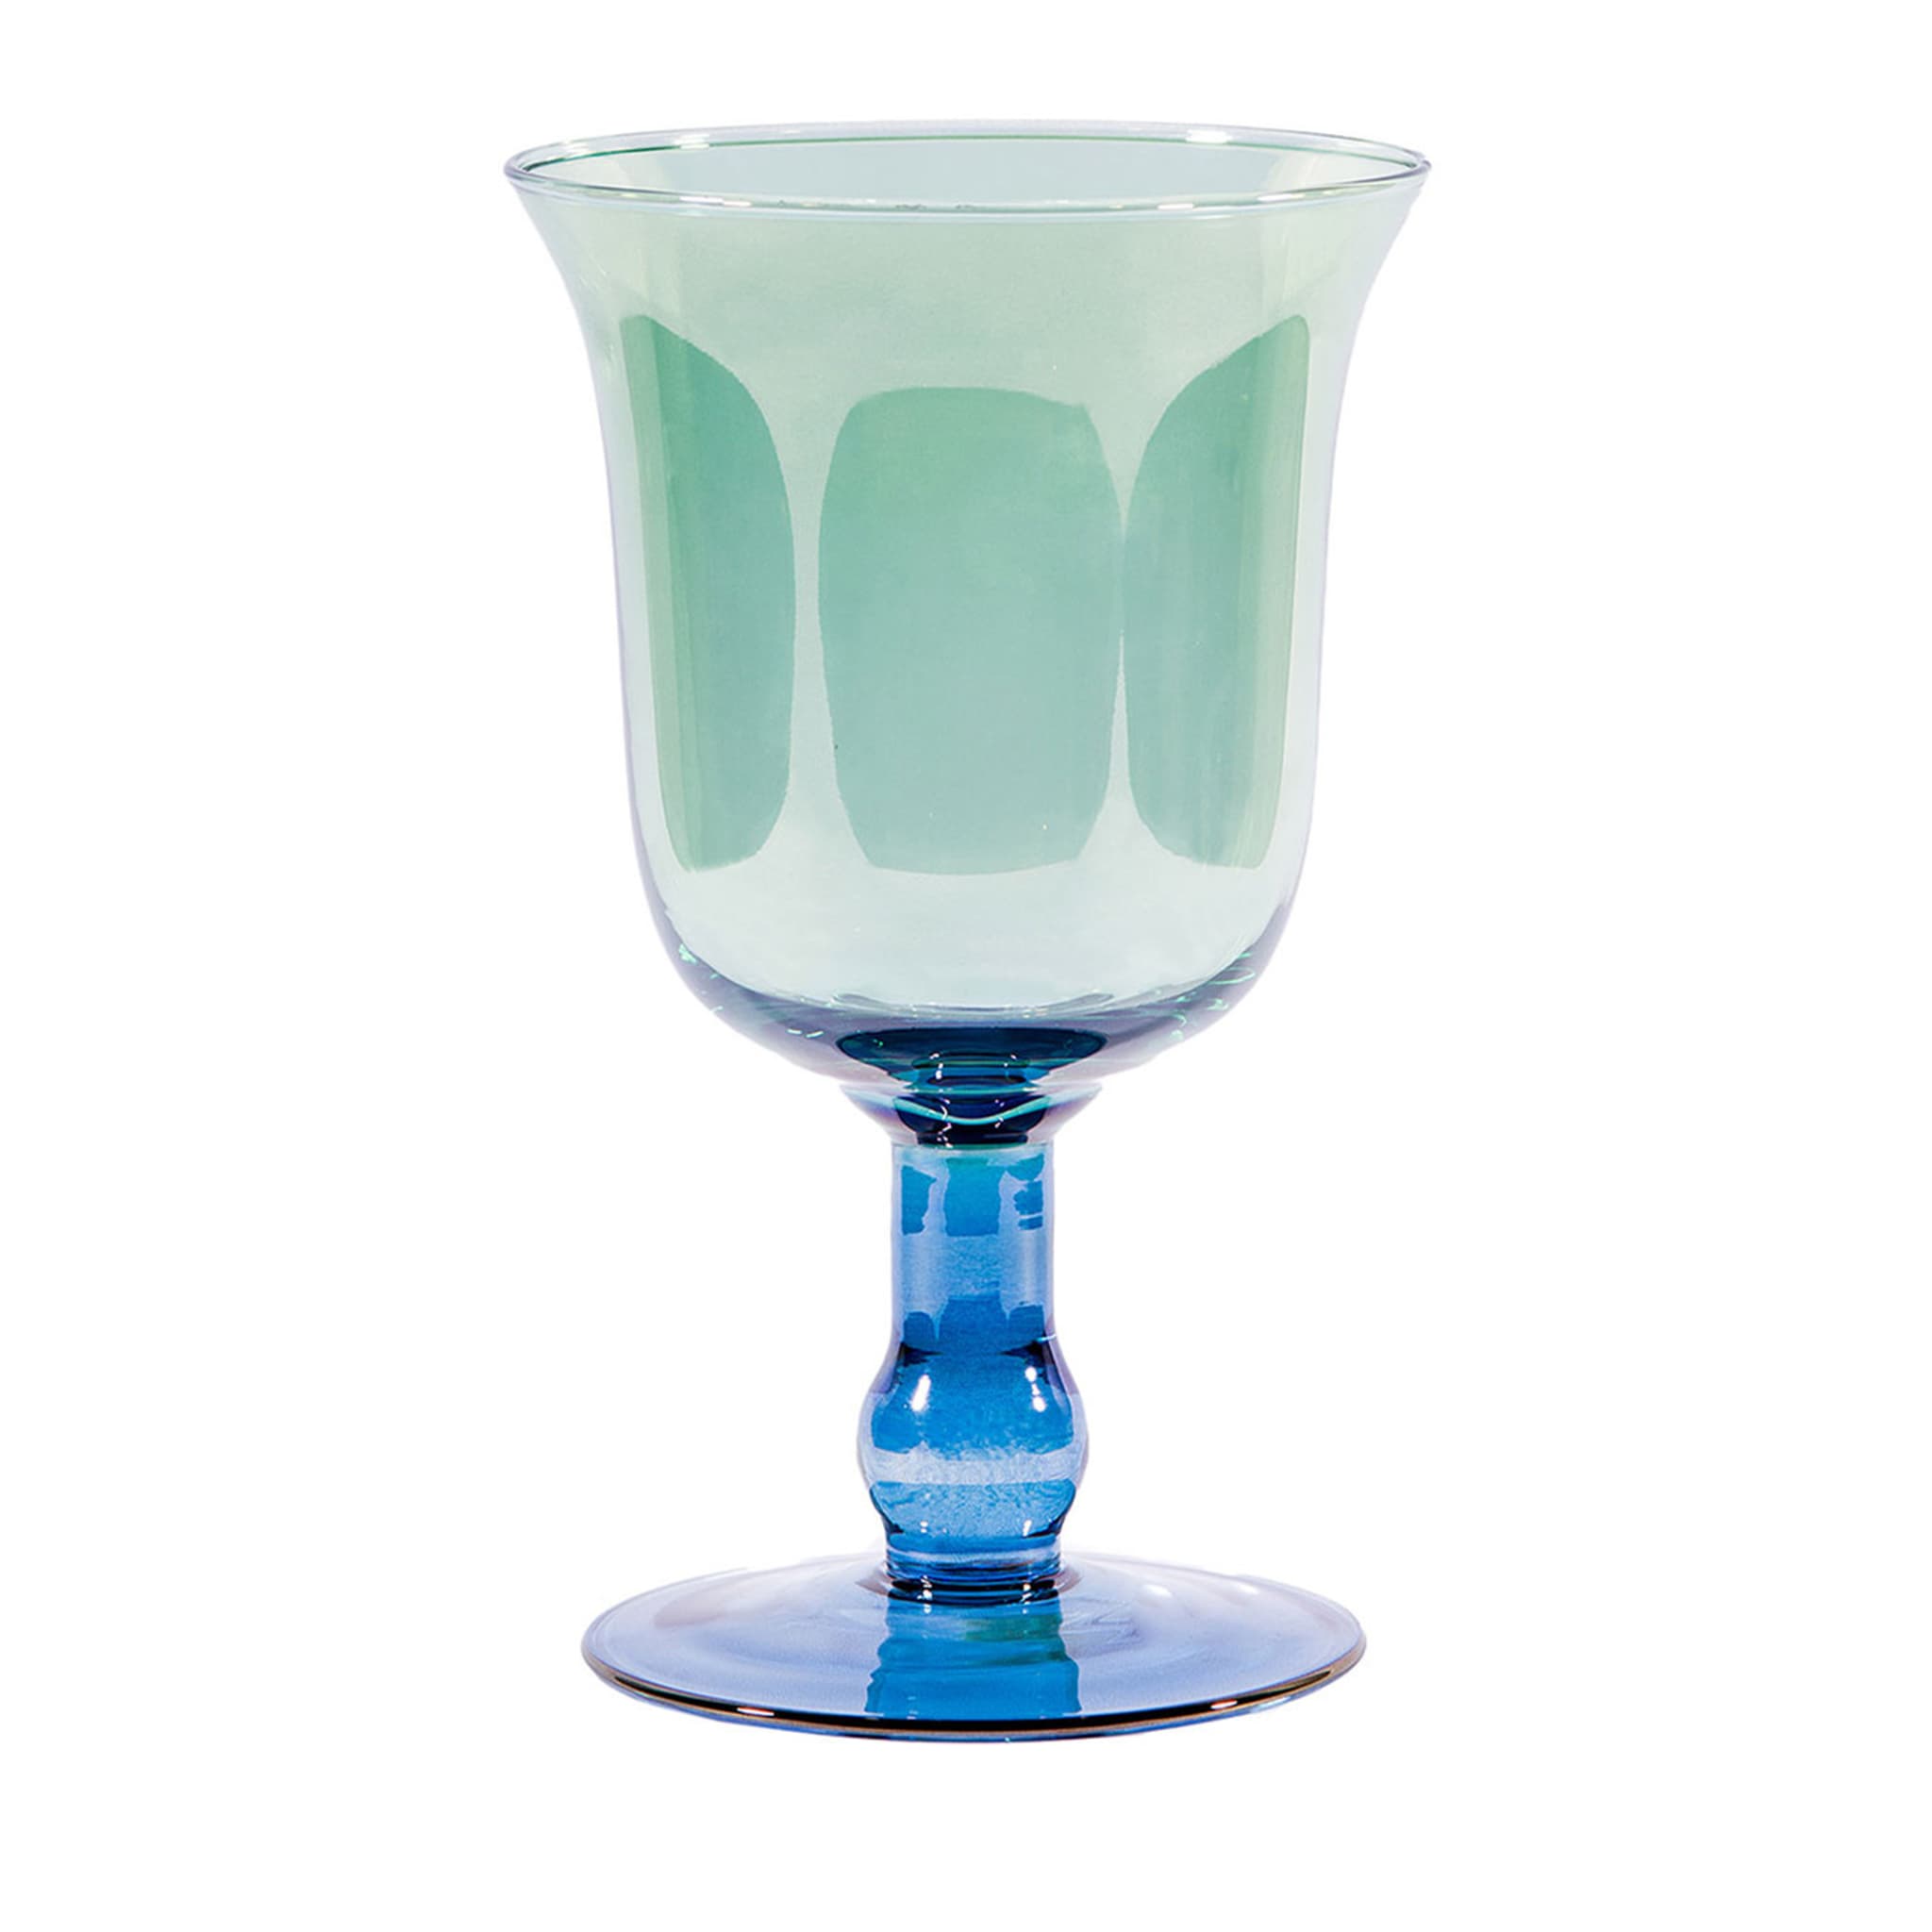 Gran jarrón copa azul y verde - Vista principal